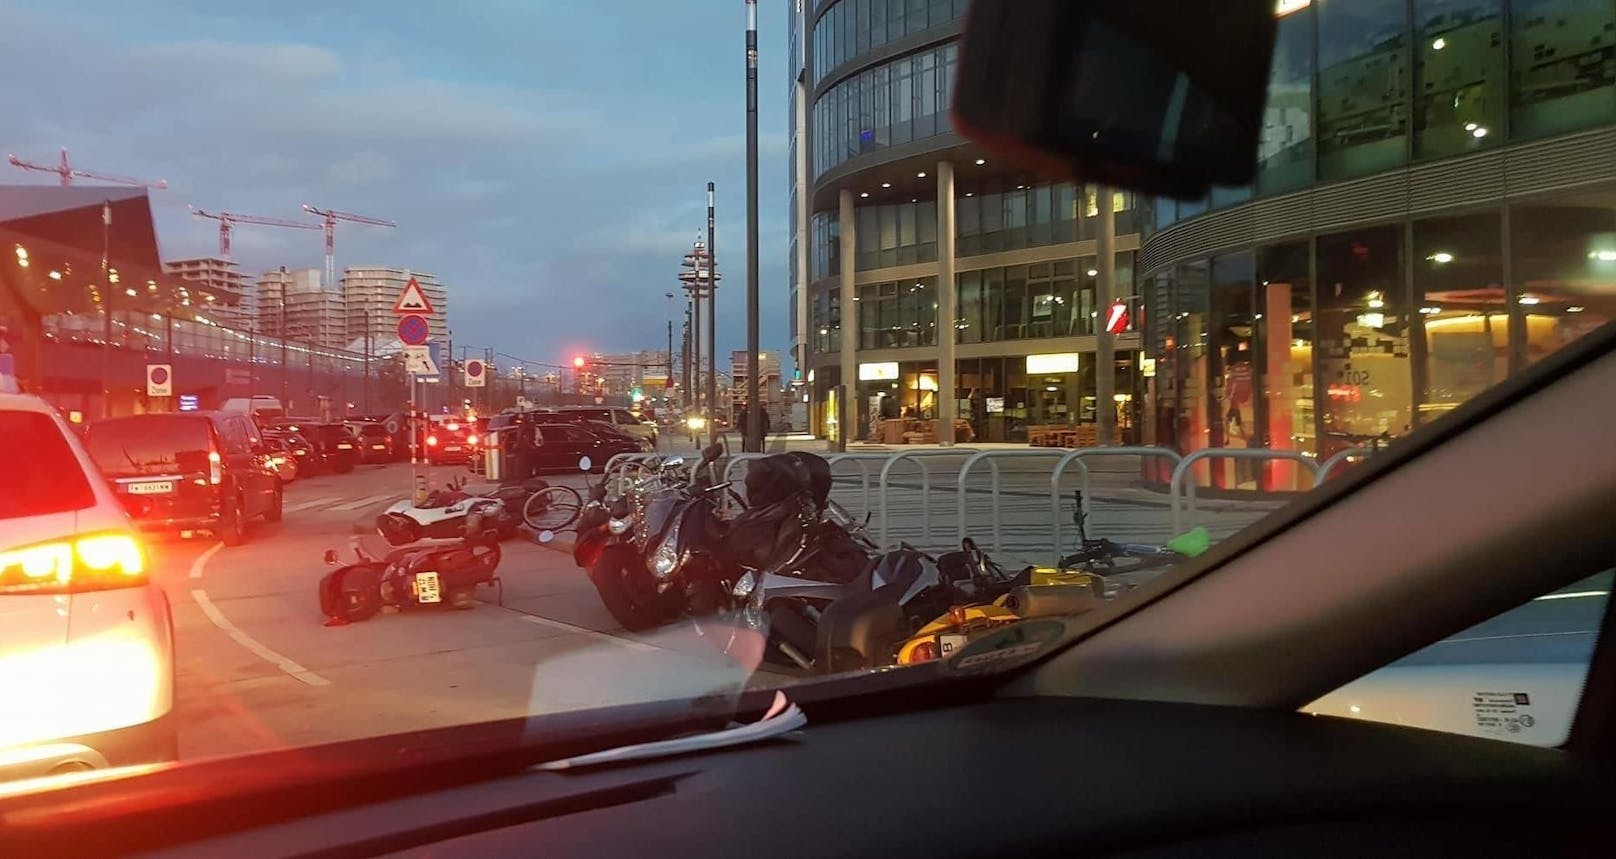 Philip schreibt: "Da hat's am Hauptbahnhof ein paar Mopeds umgeschmissen."